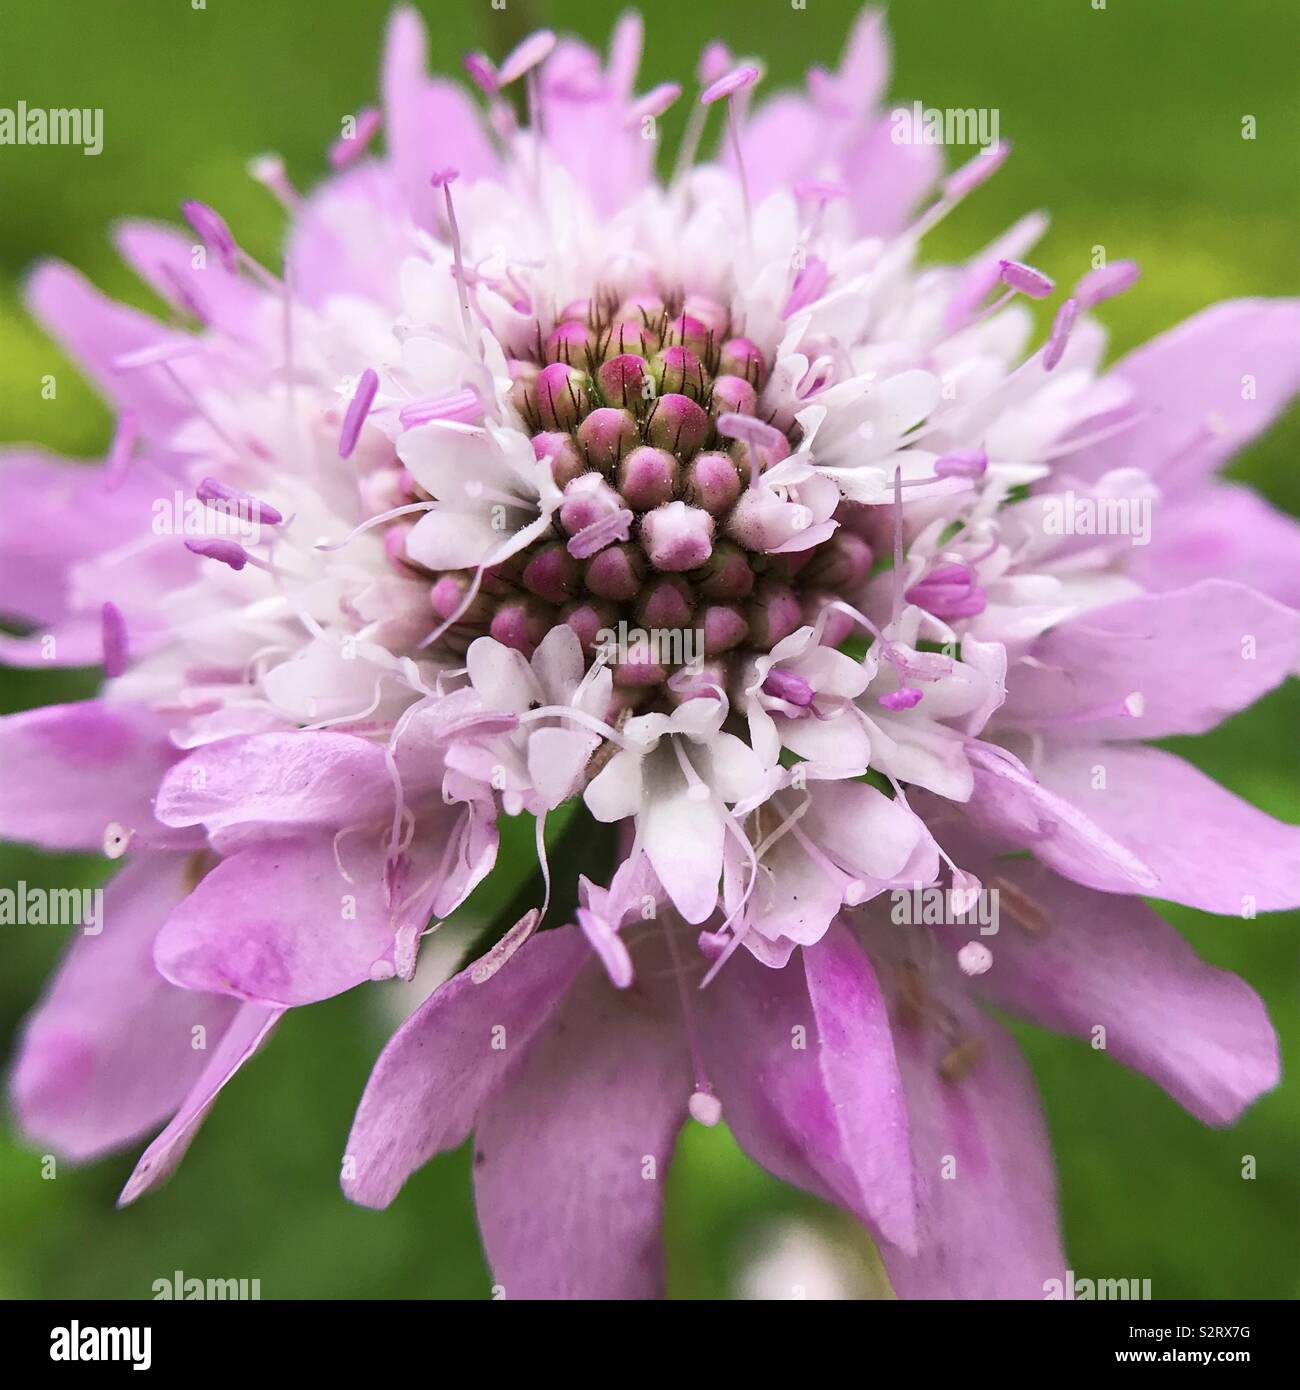 Details in pink flower - garden Stock Photo